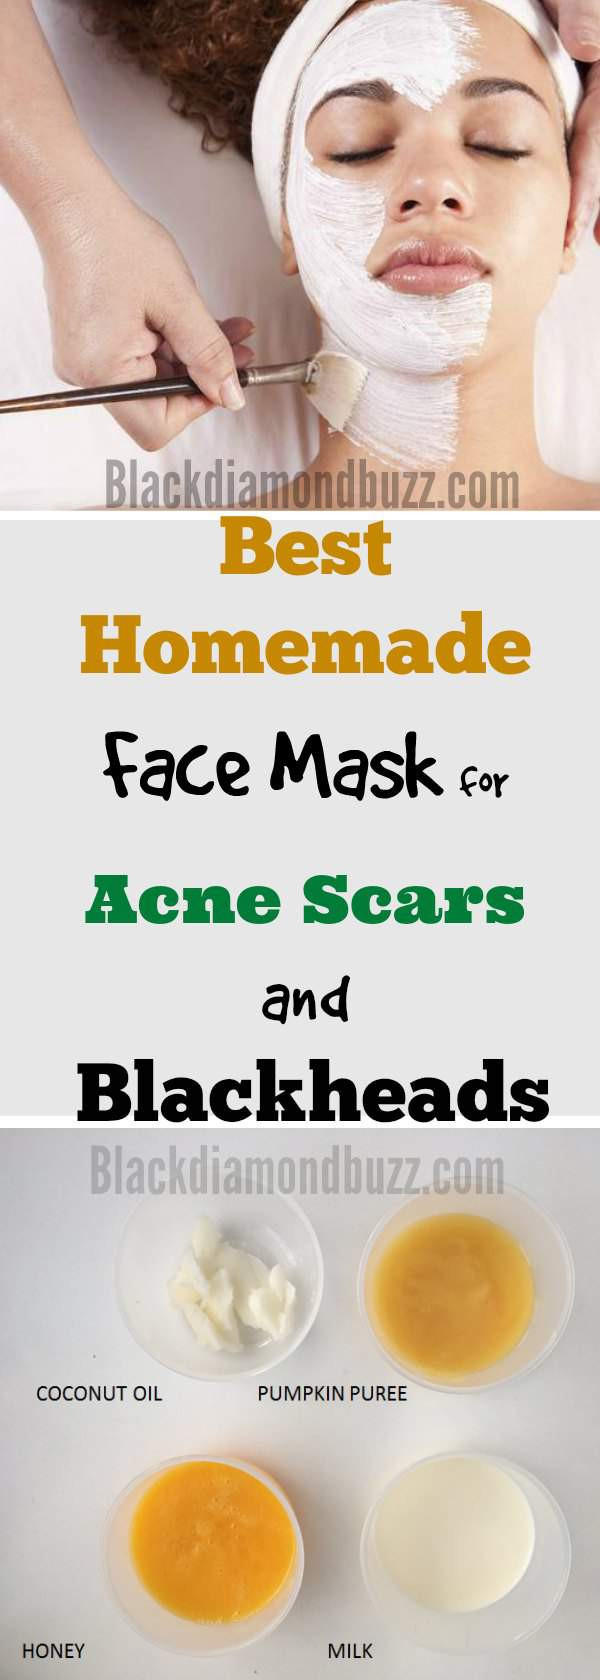 DIY Pimple Mask
 DIY Face Mask for Acne 7 Best Homemade Face Masks